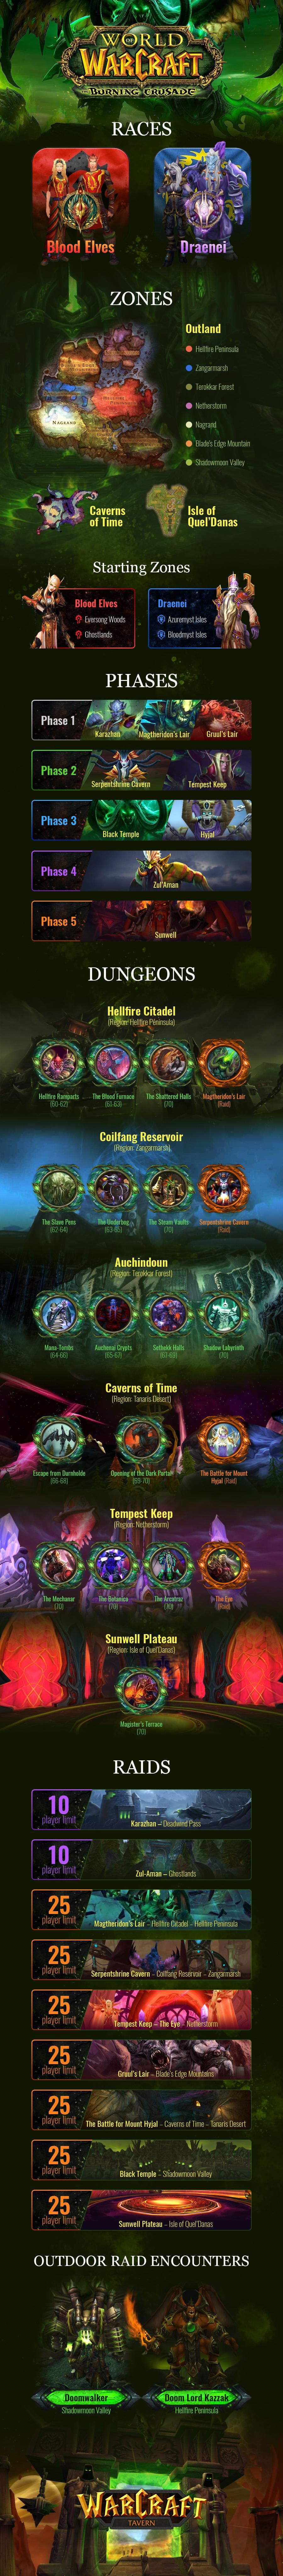 Инфографика контента в The Burning Crusade. Автор: WarcraftTavern. Источник: reddit